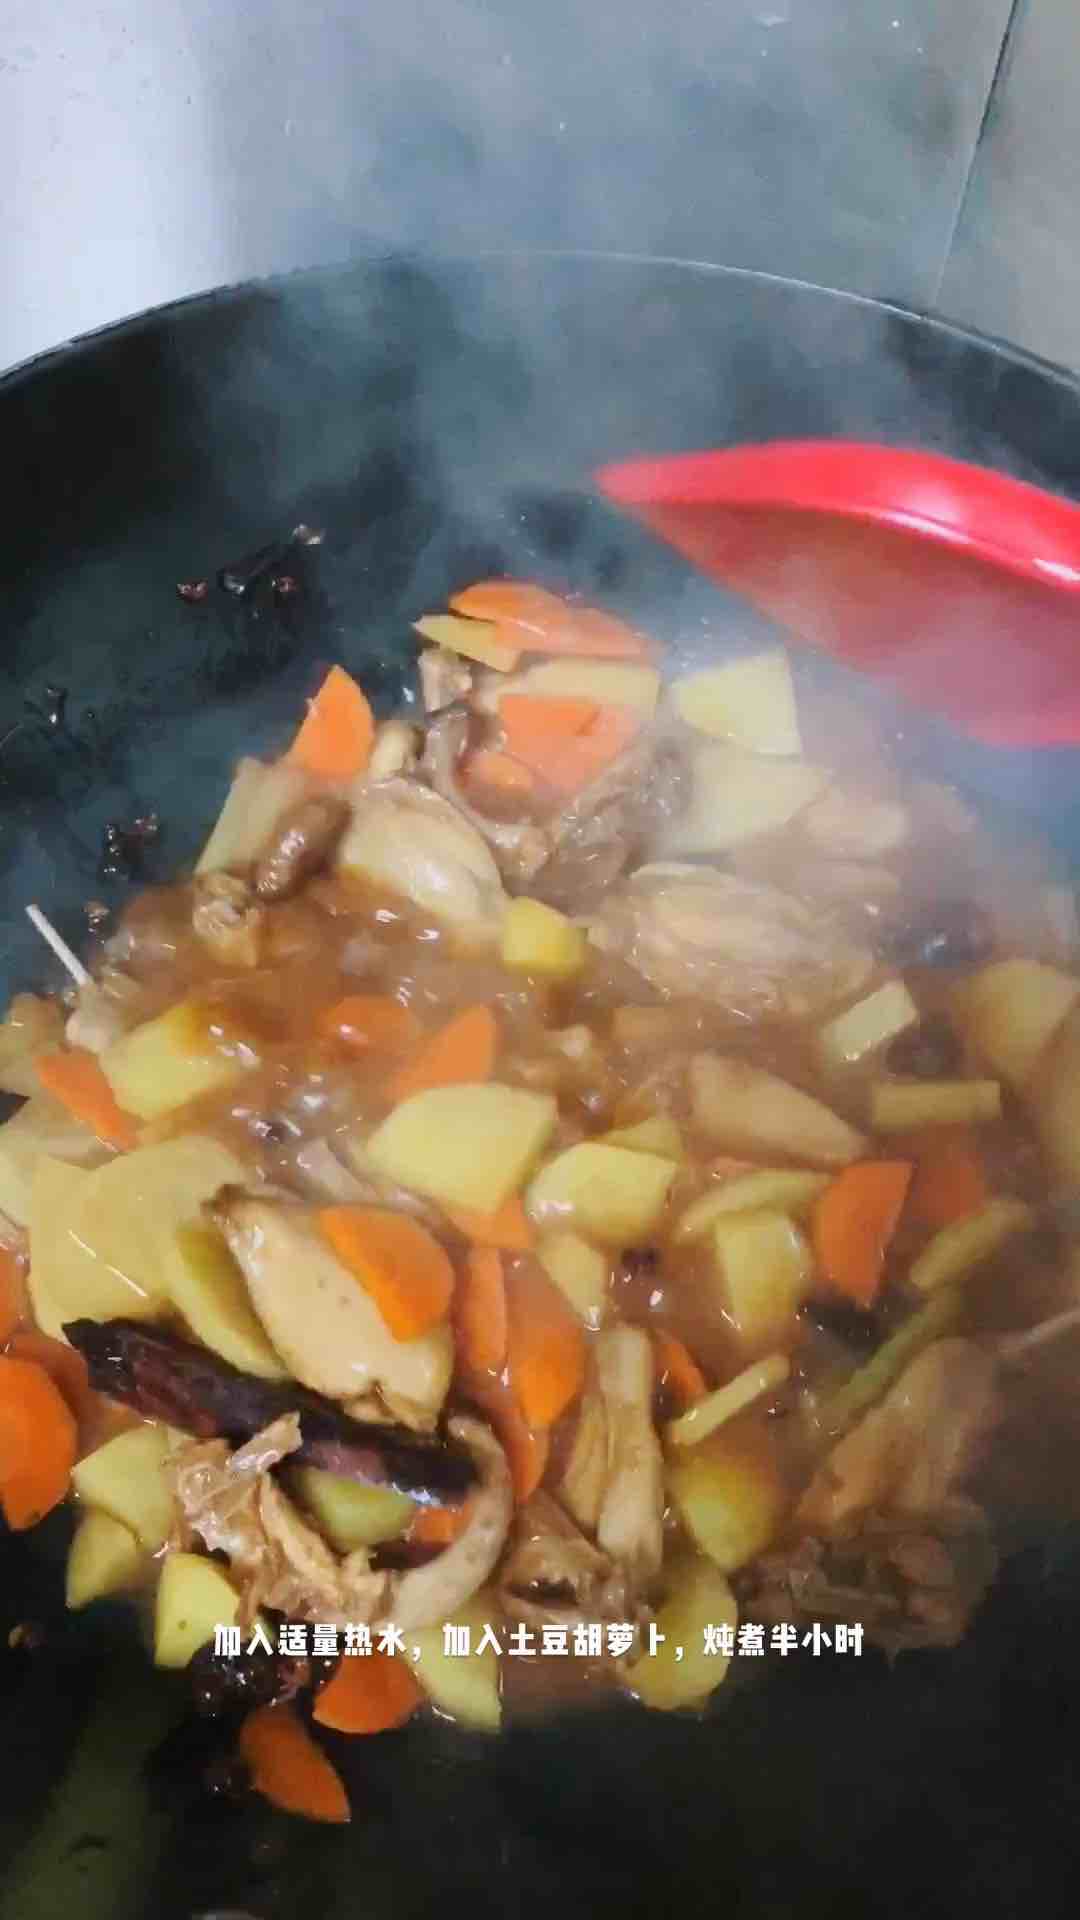 Stir-fried Quail with Sauce recipe